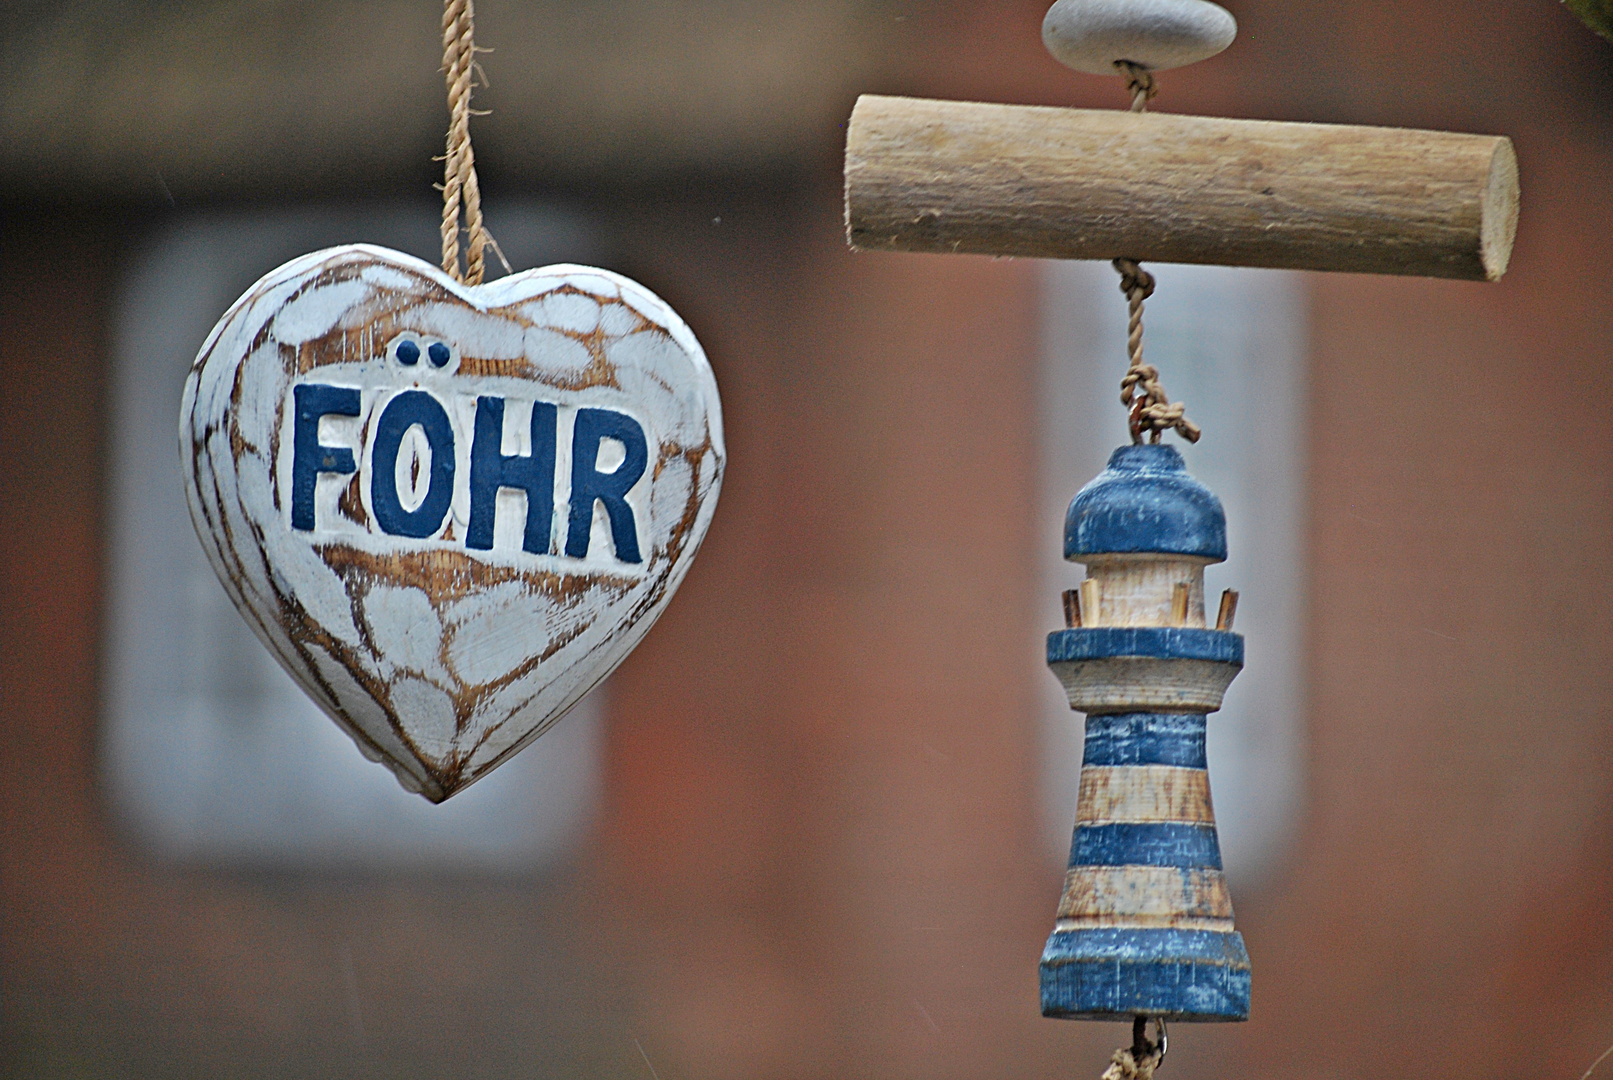 I love Föhr...